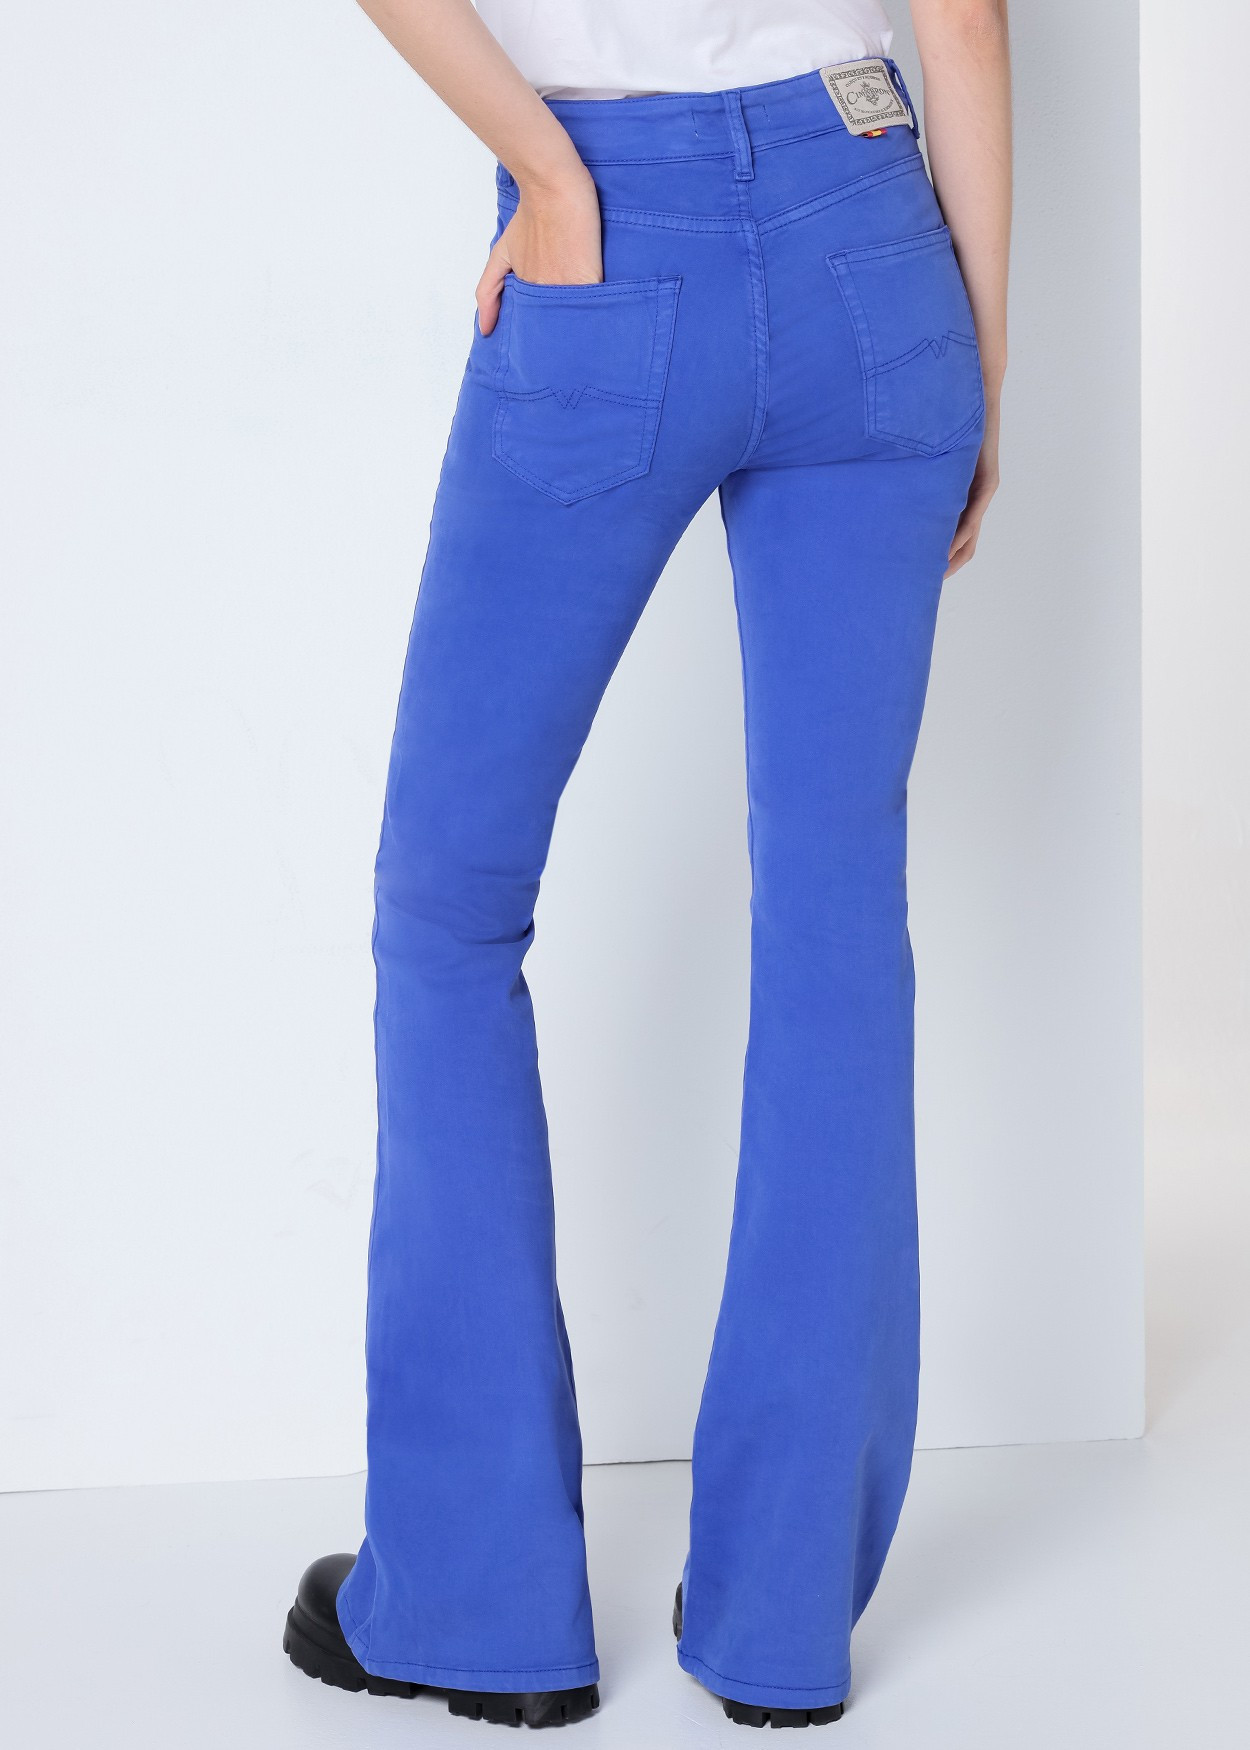 CARLA HELEN - Pantalon Couleur Taille Haute | Coupe Évasé | Taille en pouces Cimarron